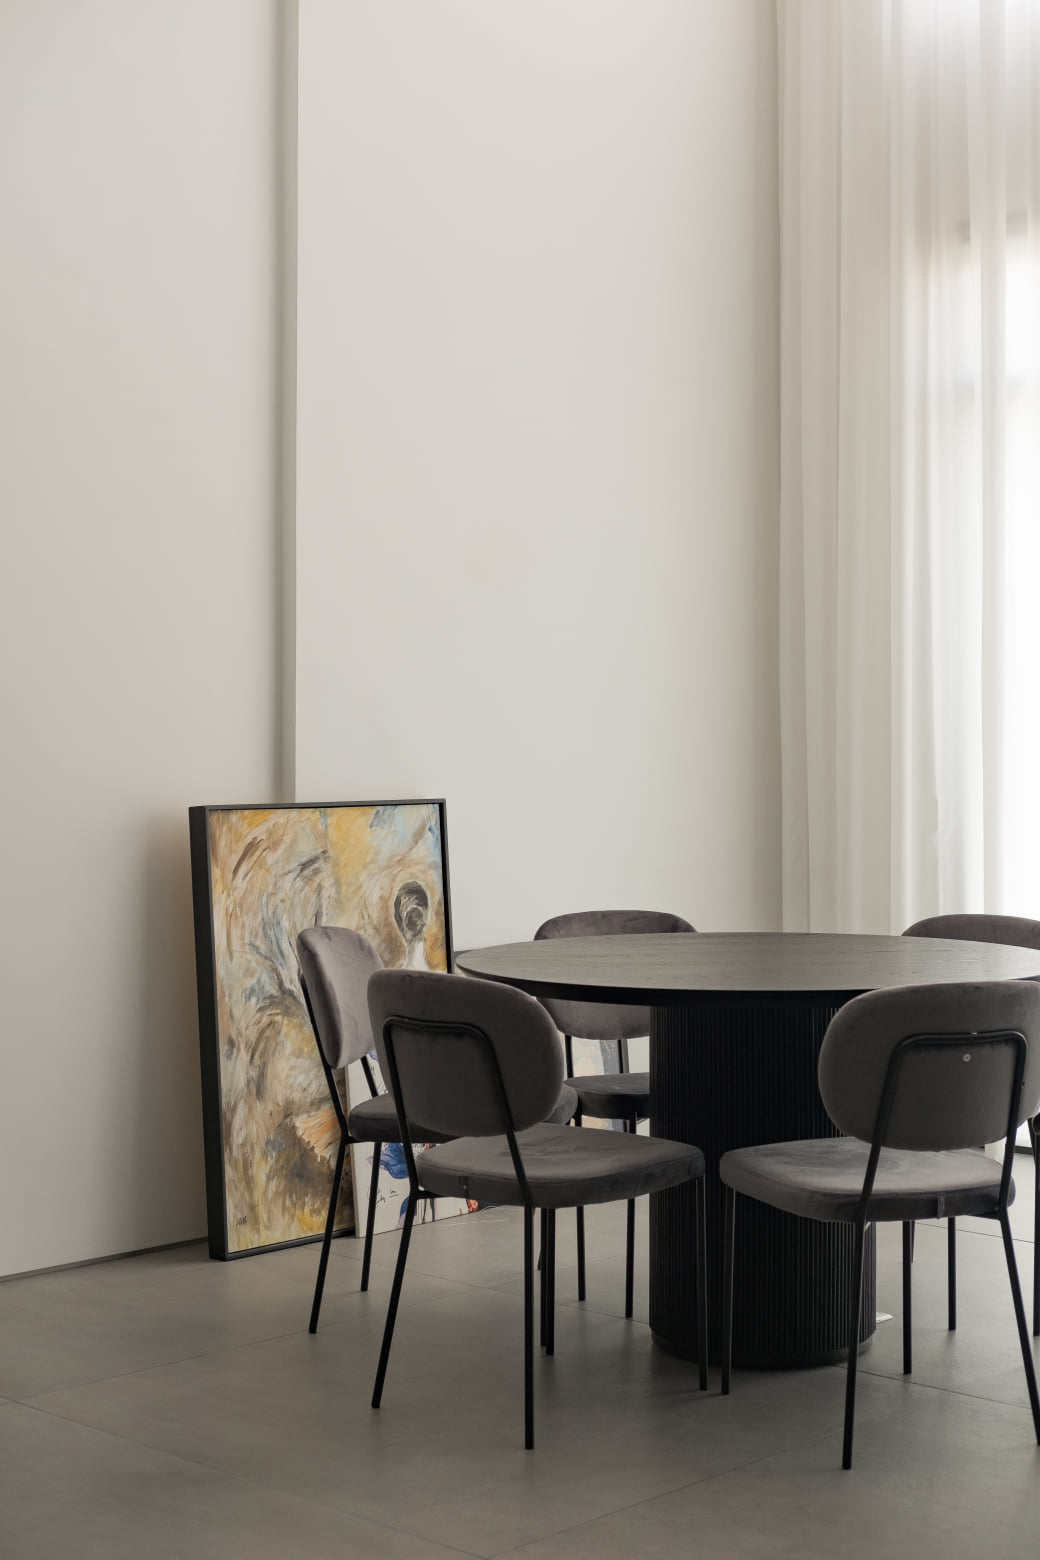 Bên cạnh phòng bếp chính là không gian ăn uống với chiếc bàn ăn tròn 6 ghế màu đen đơn giản.